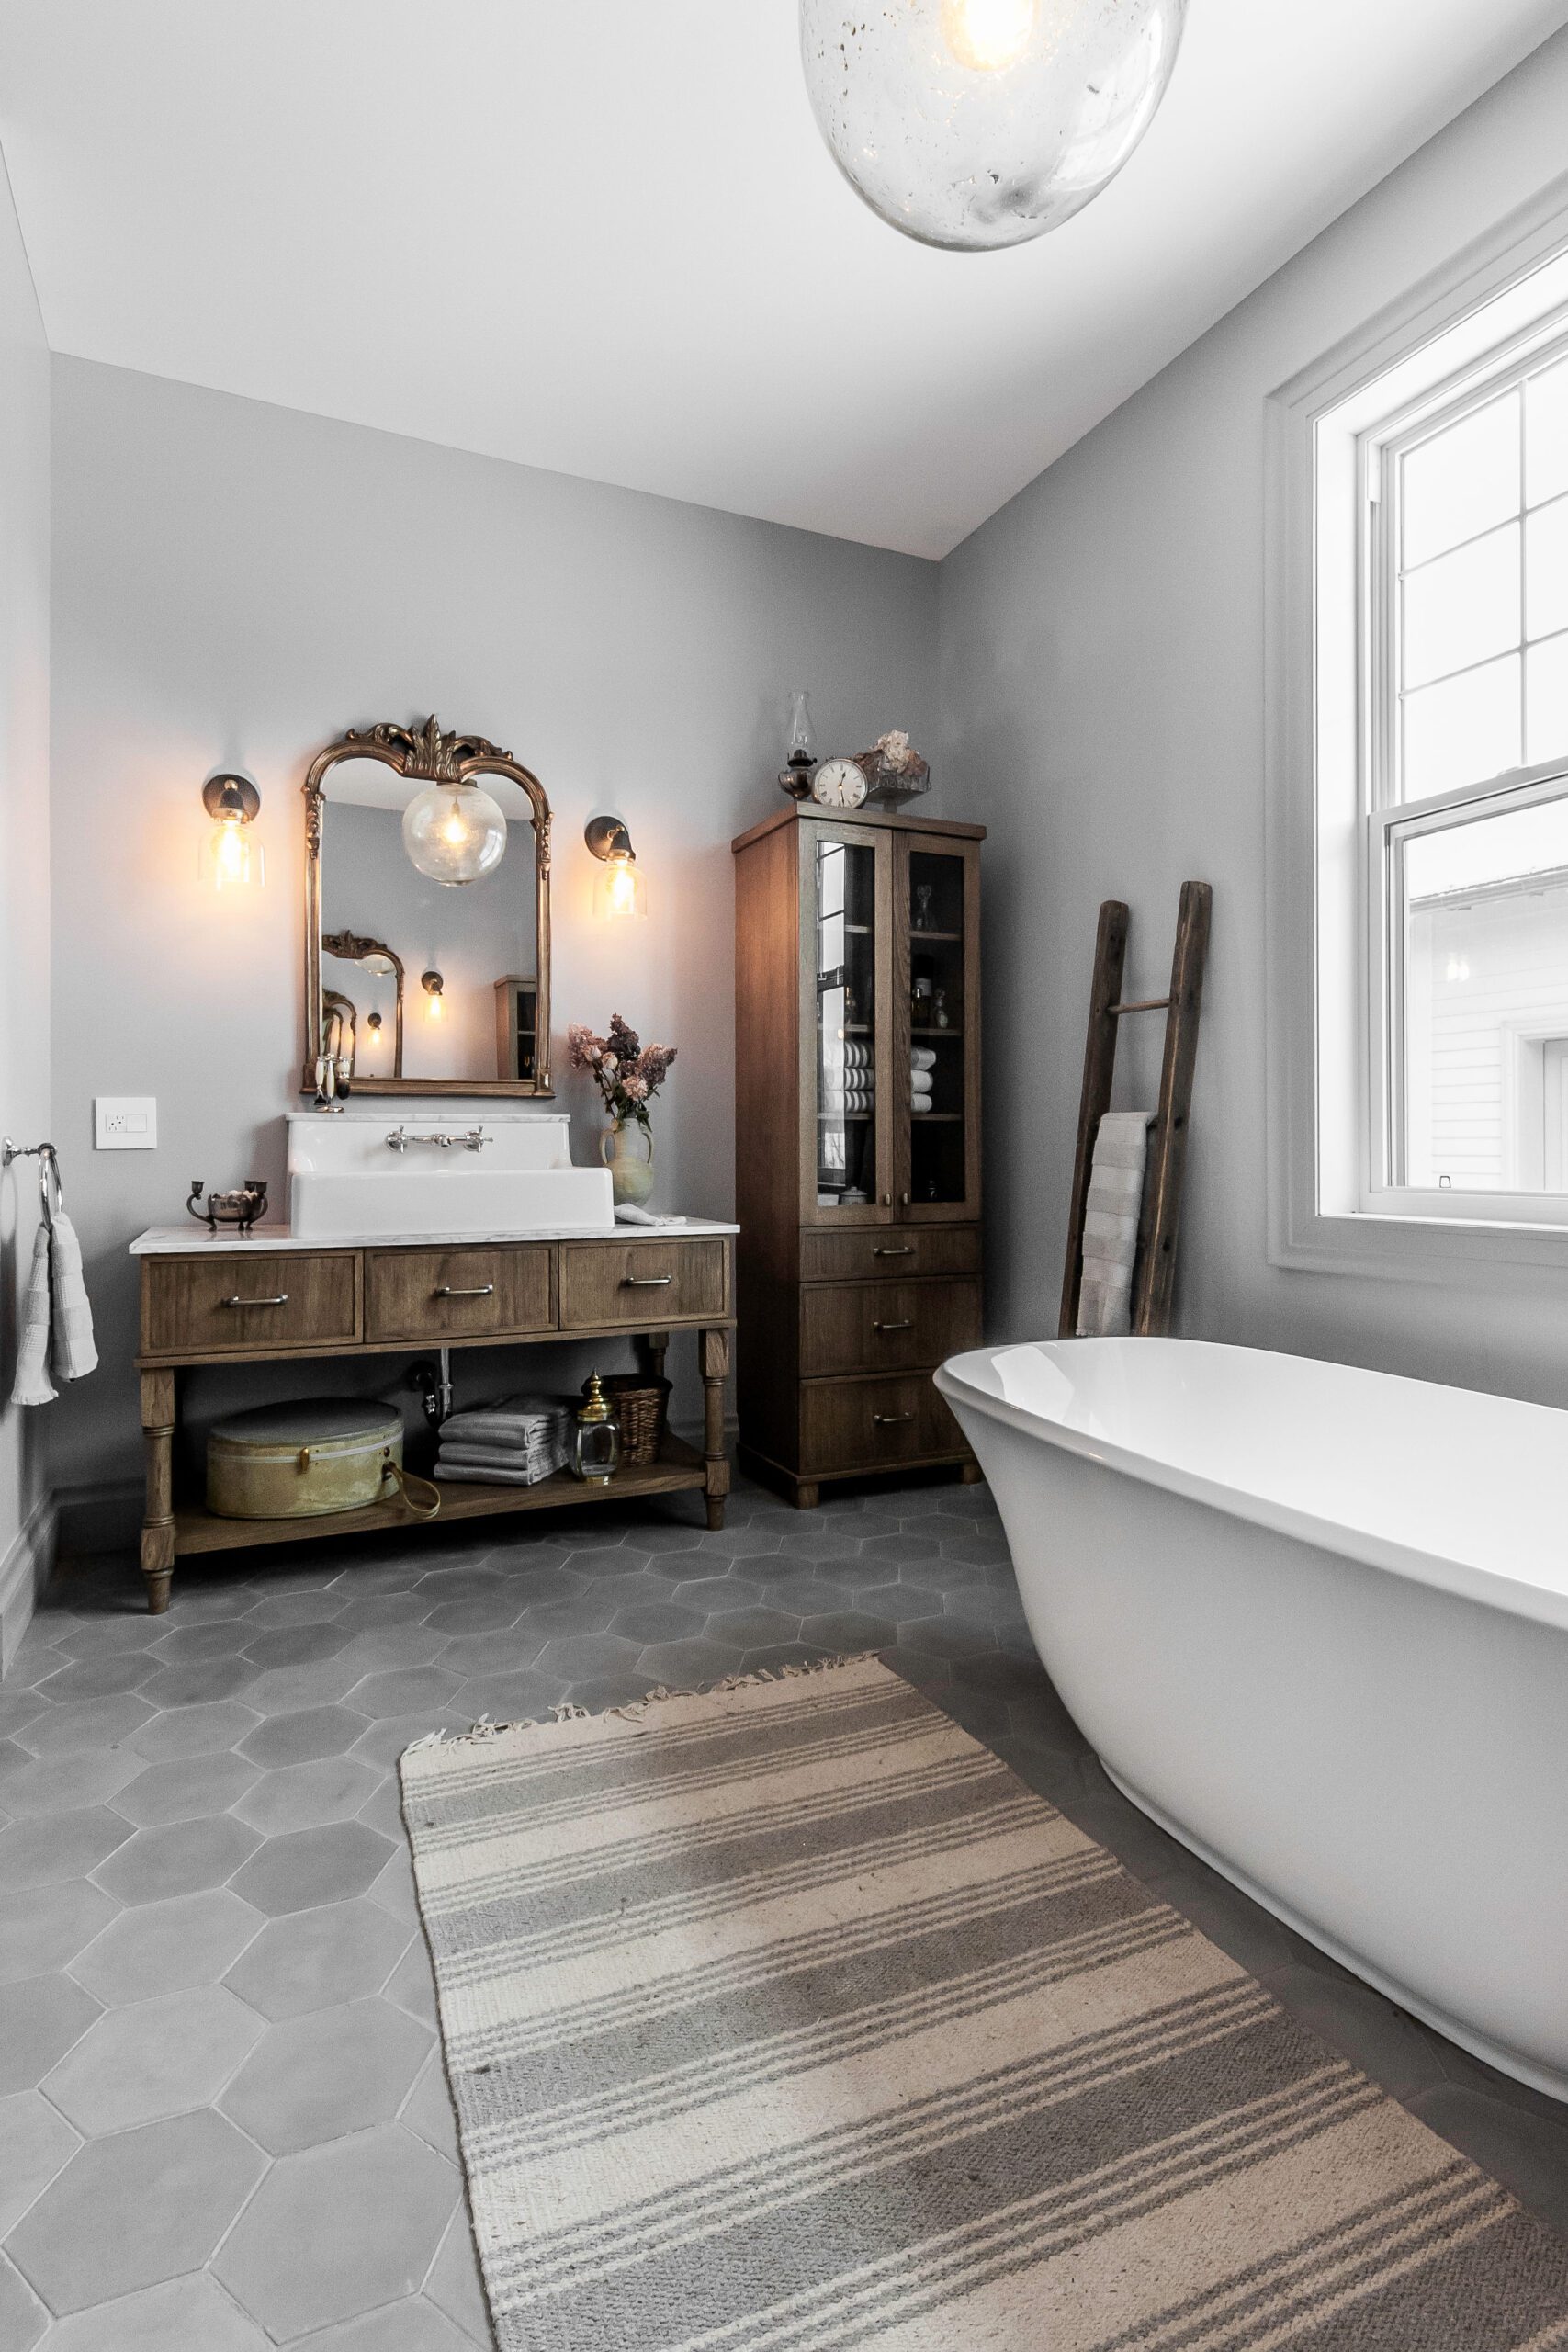 Salle de bain champêtre, bain autoportant blanc, bois, miroir rustique